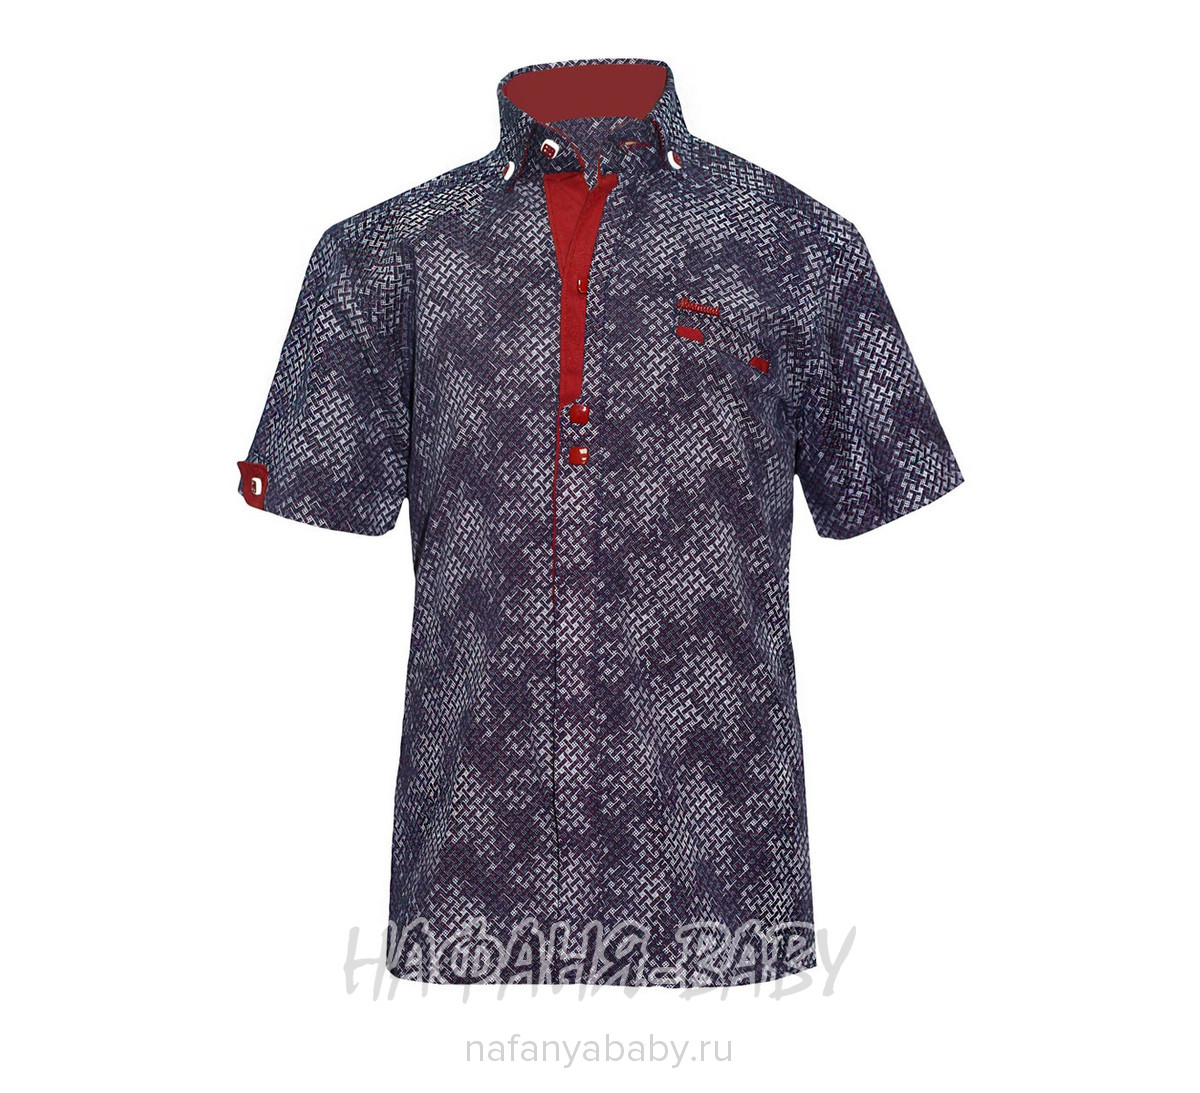 Рубашка для мальчика NORMANI арт: 336 5-9, 5-9 лет, цвет темный с бордовой вставкой, оптом Турция